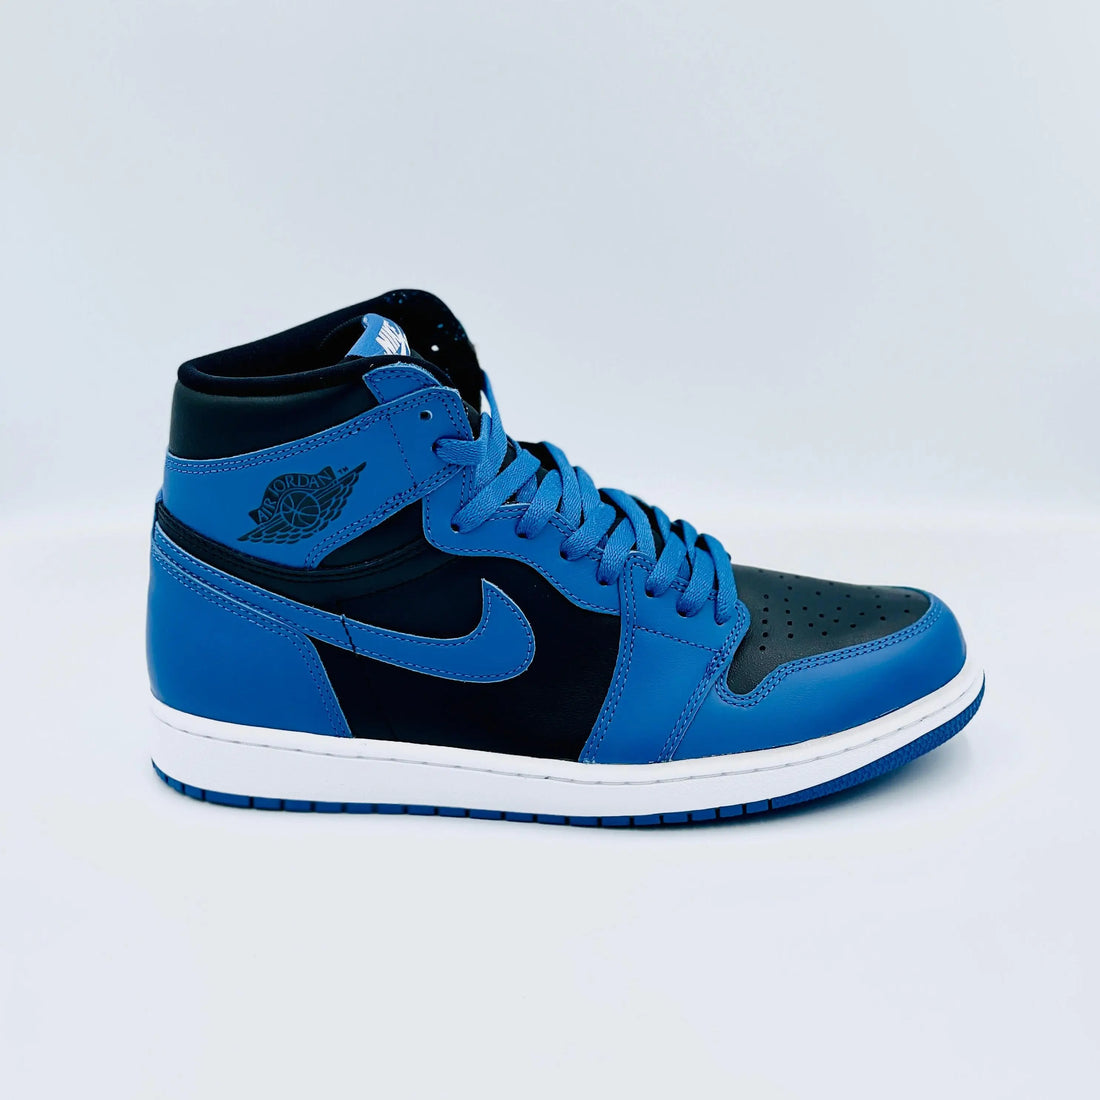 Jordan 1 High Dark Marina Blue  SA Sneakers